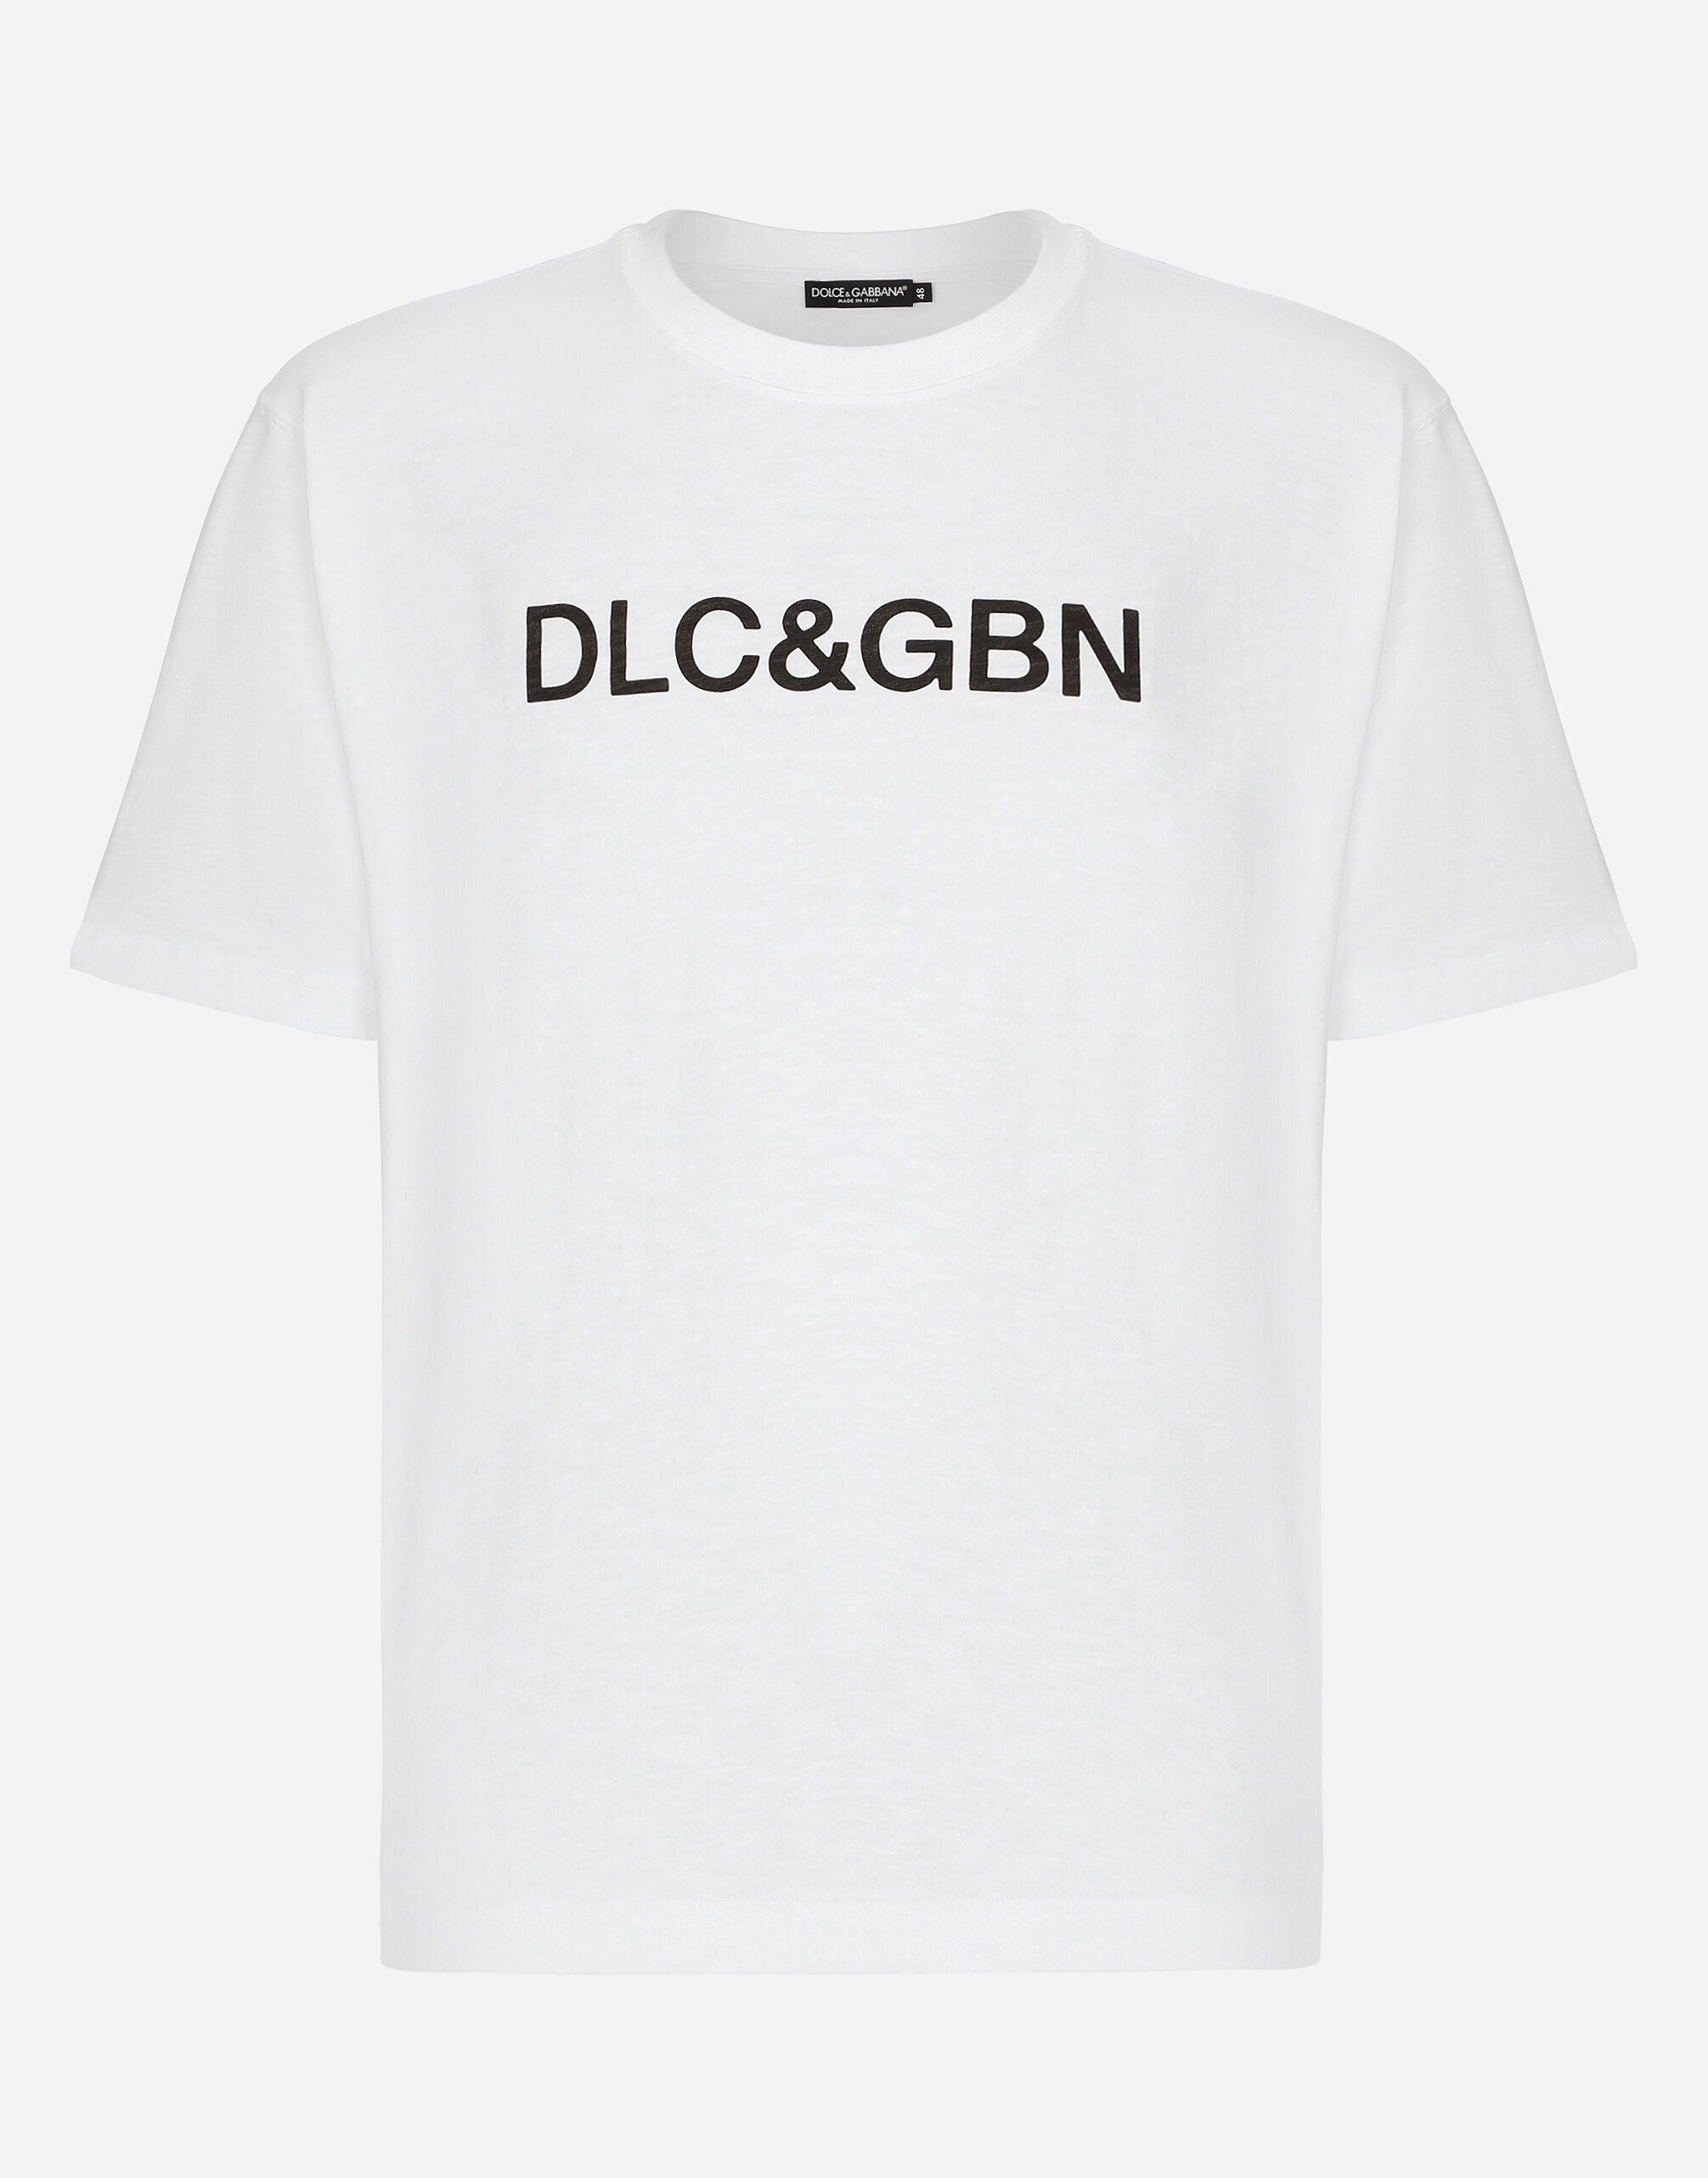 Dolce & Gabbana Cotton T-shirt with Dolce&Gabbana logo White GY6UETFUMJN